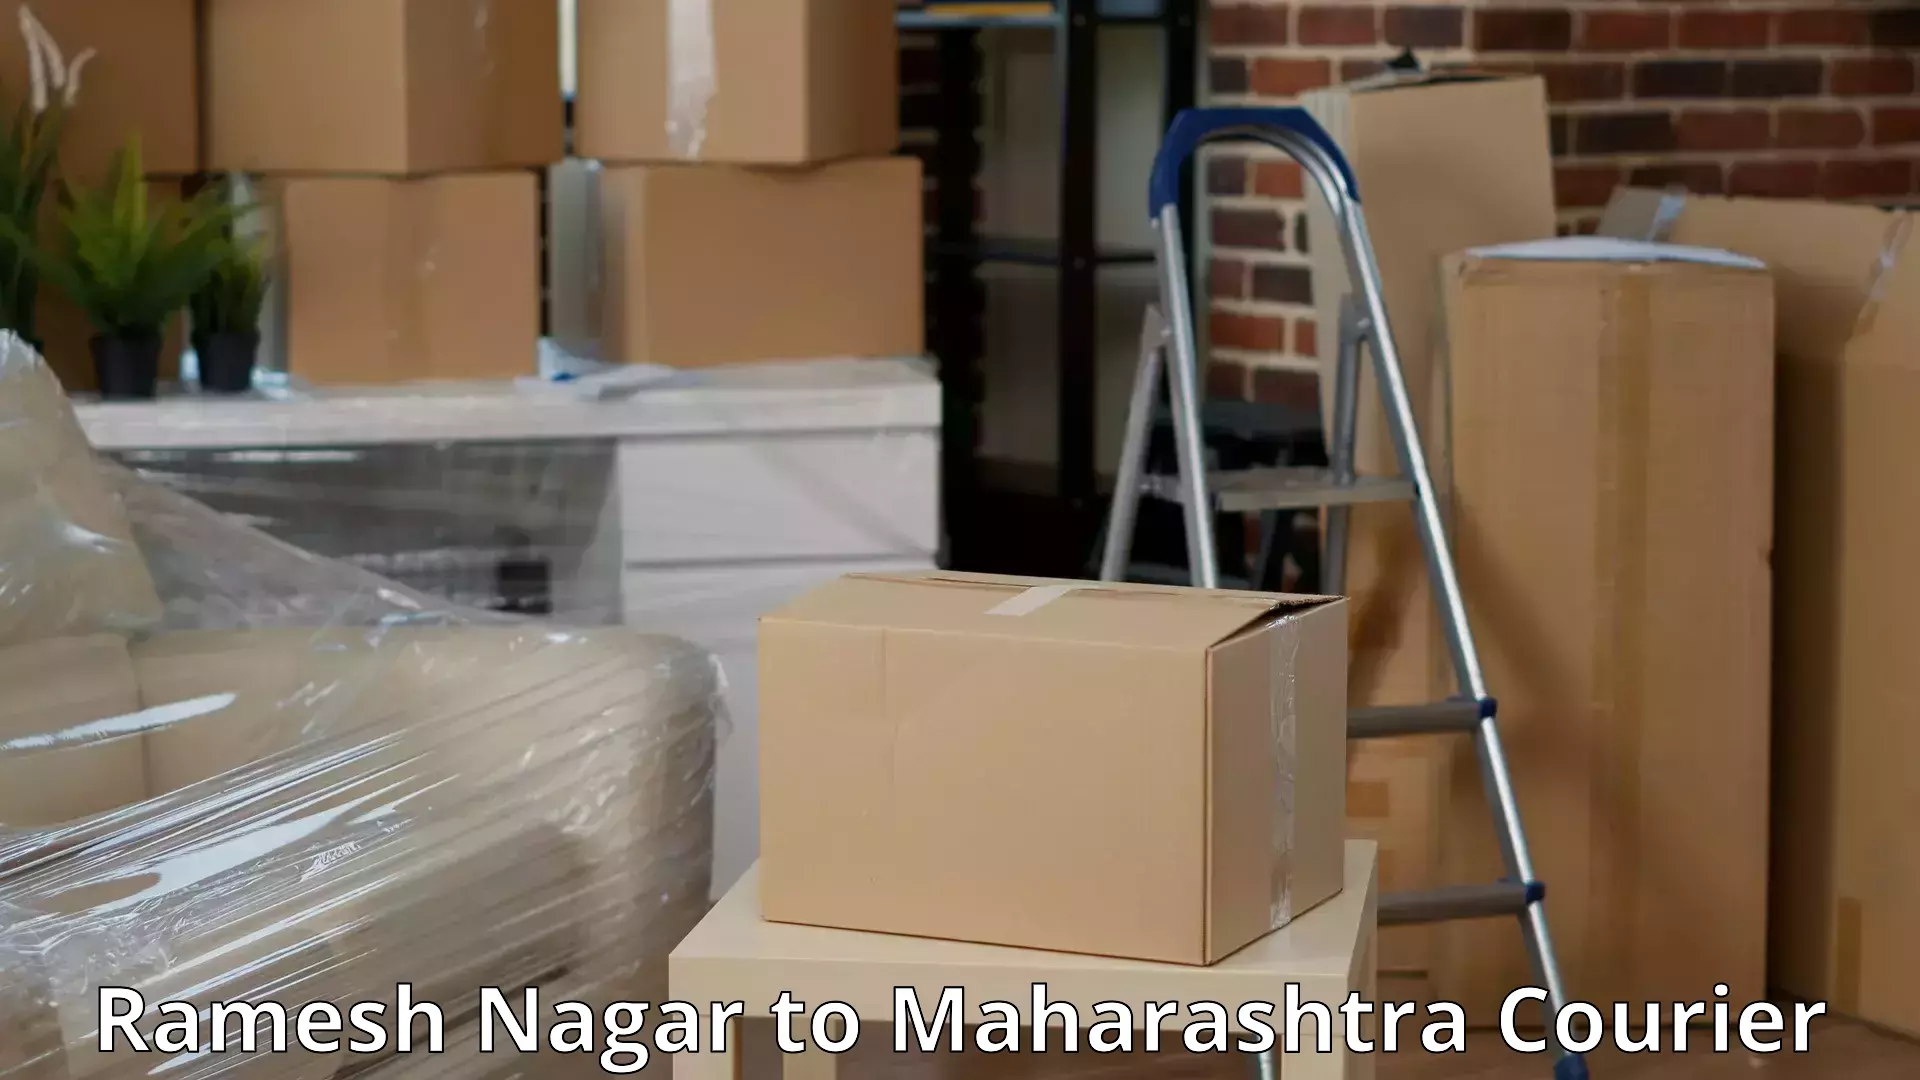 Furniture moving service Ramesh Nagar to Lonavala